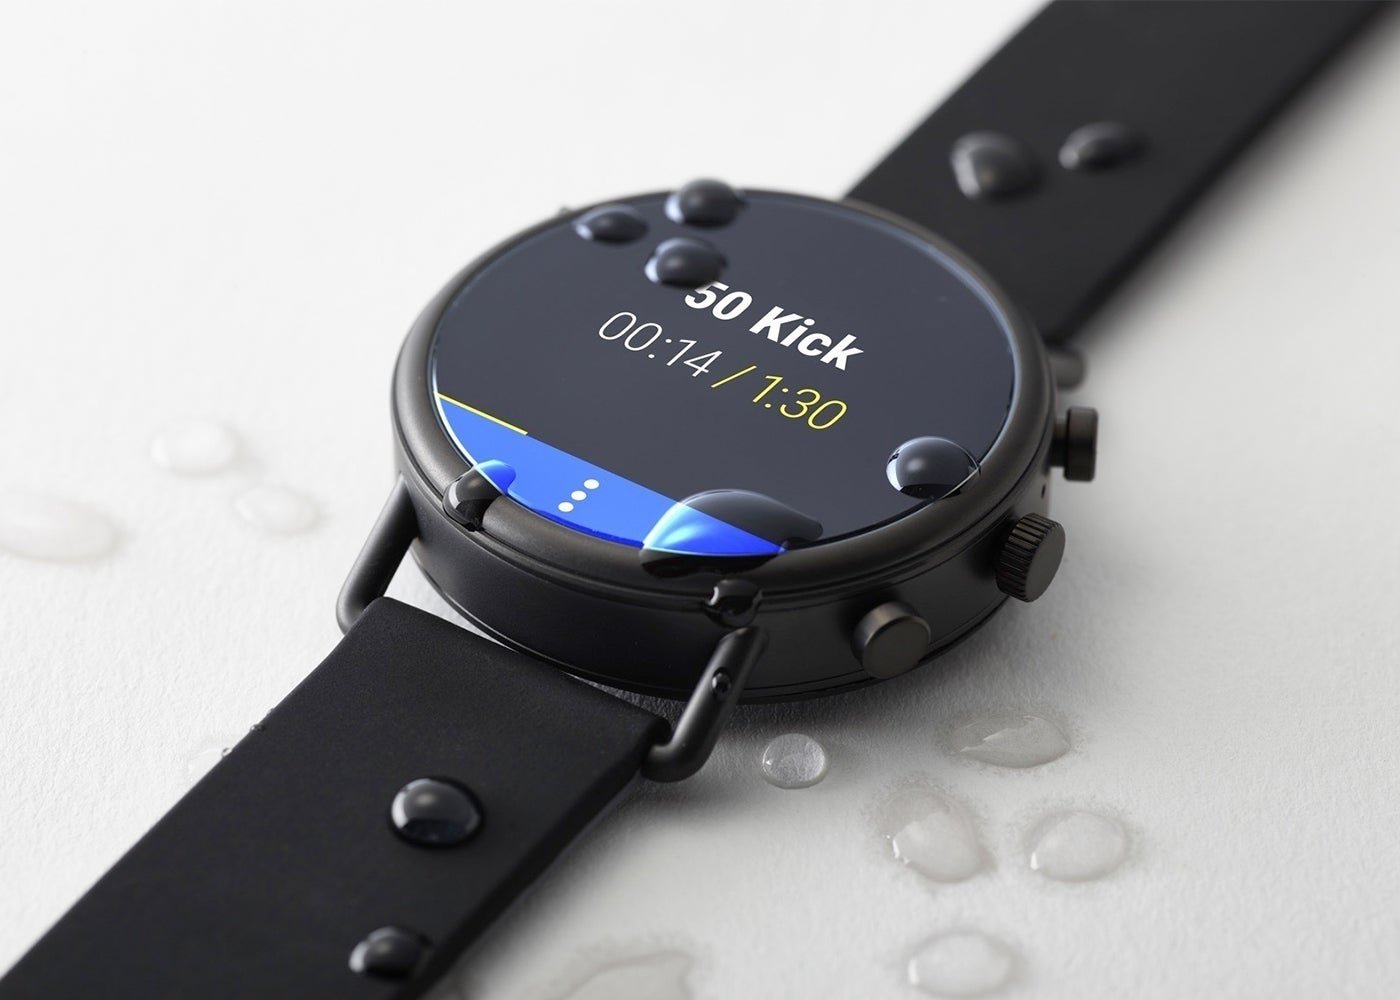 Casio, Skagen y Diesel presentan nuevos smartwatches Wear OS a las puertas del IFA 2018